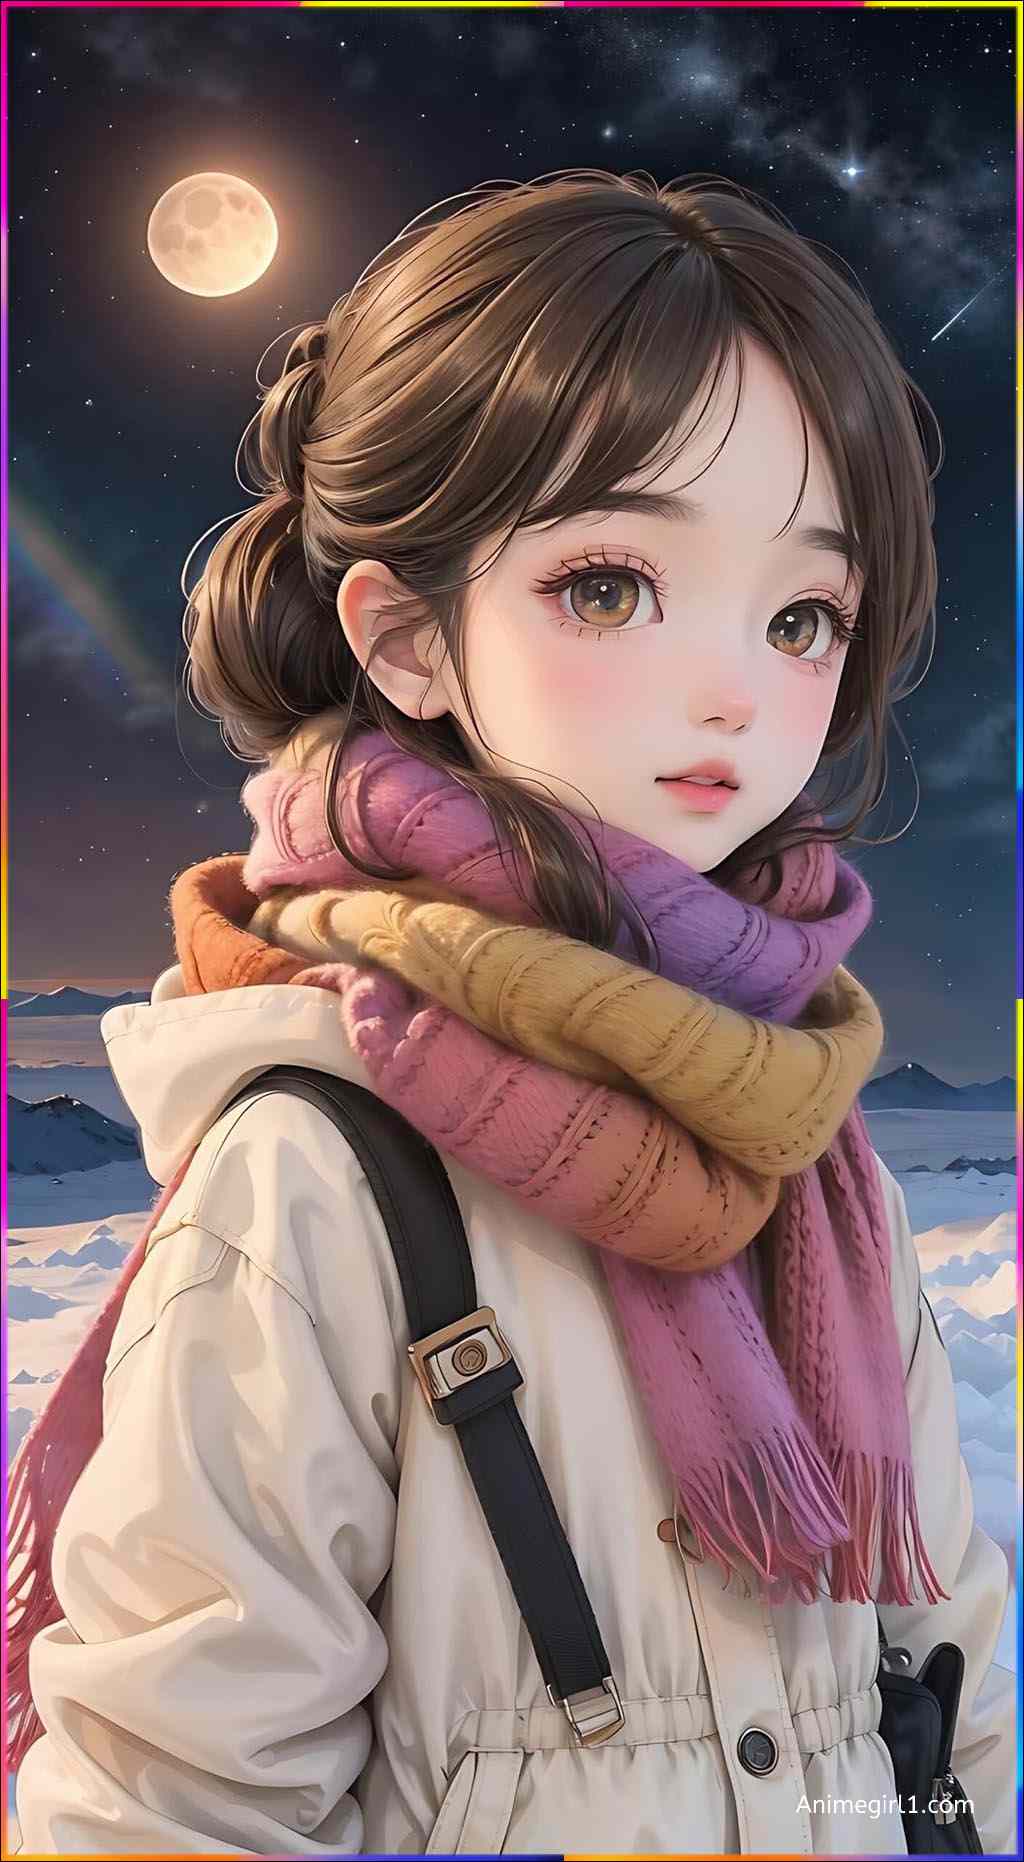 beautiful anime girl in winter